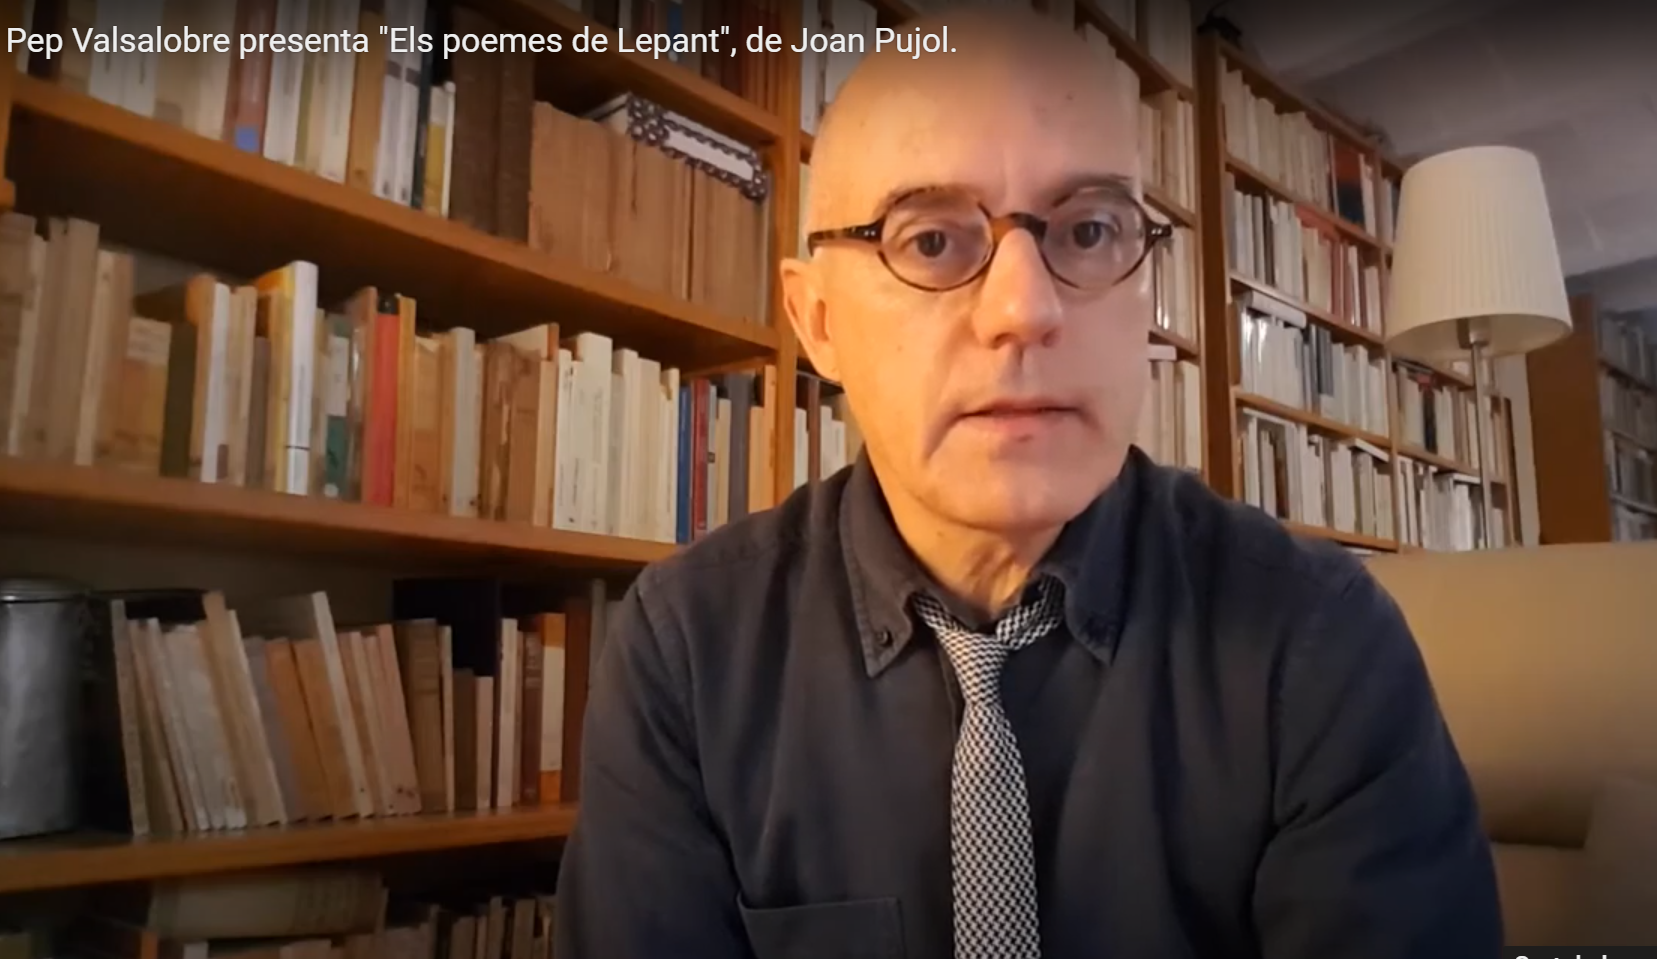 Pep Valsalobre presenta "Els poemes de Lepant" de Joan Pujol